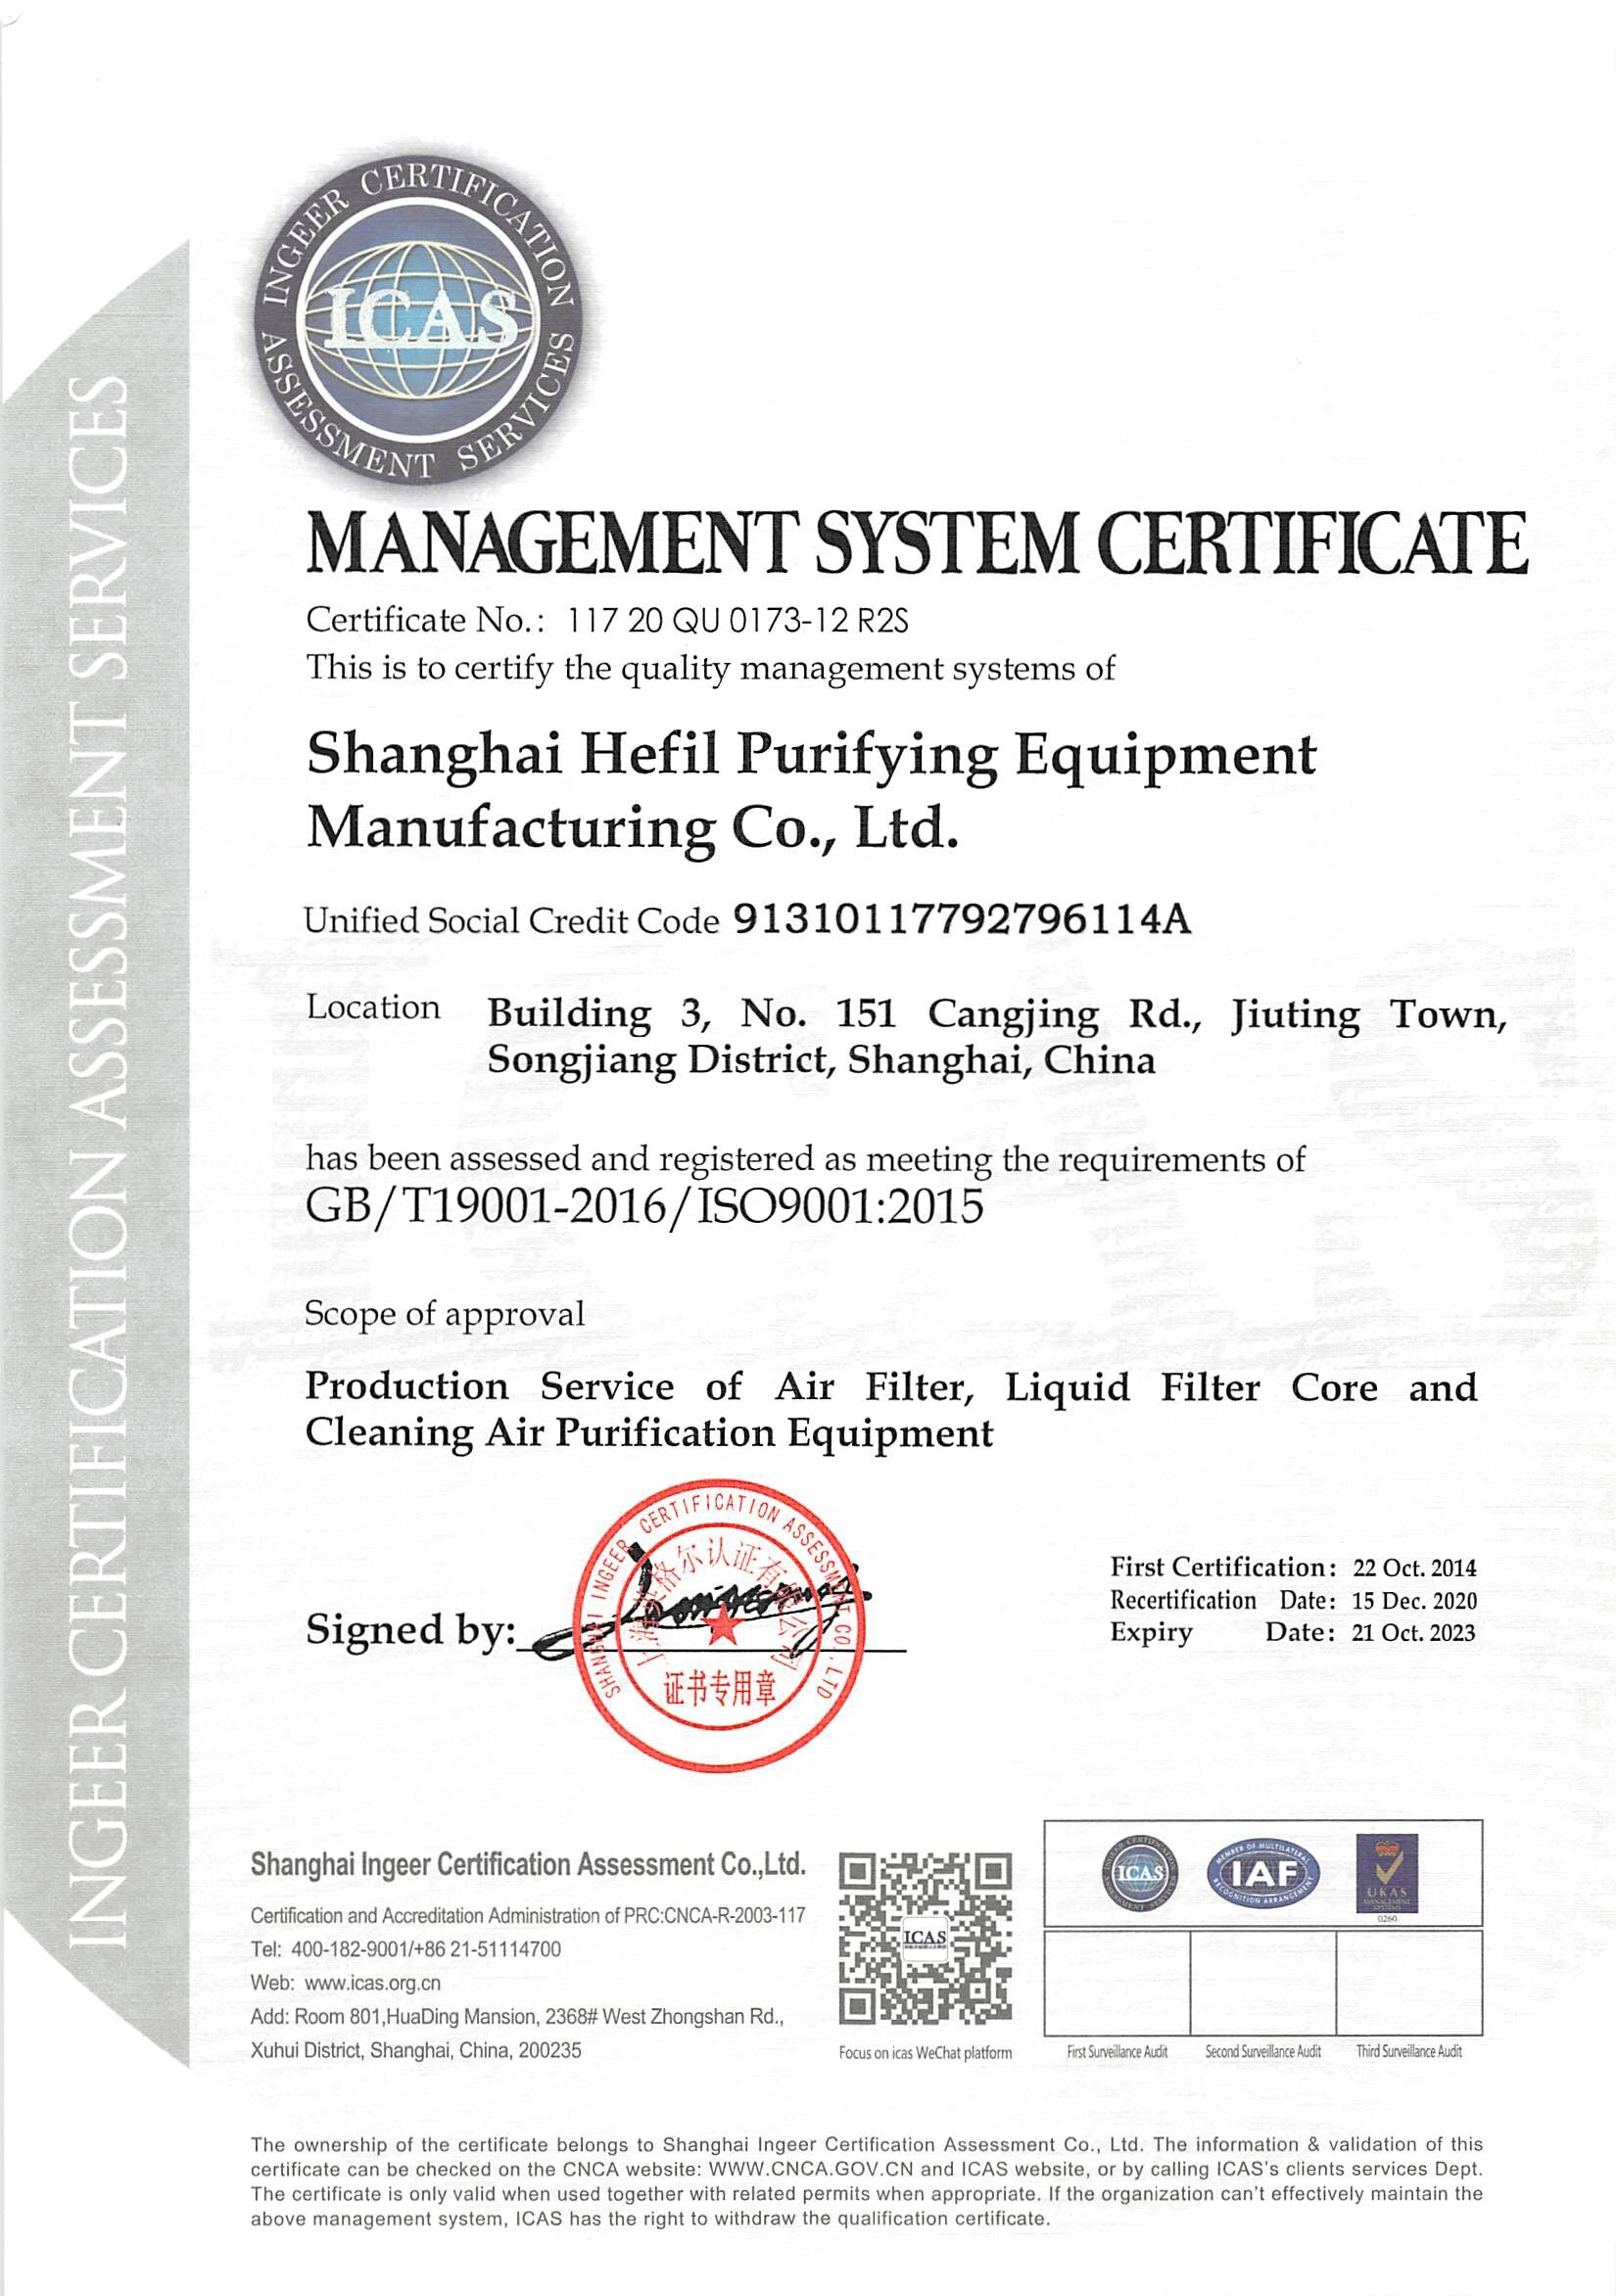 上海禾益净化设备制造有限公司管理体系认证证书